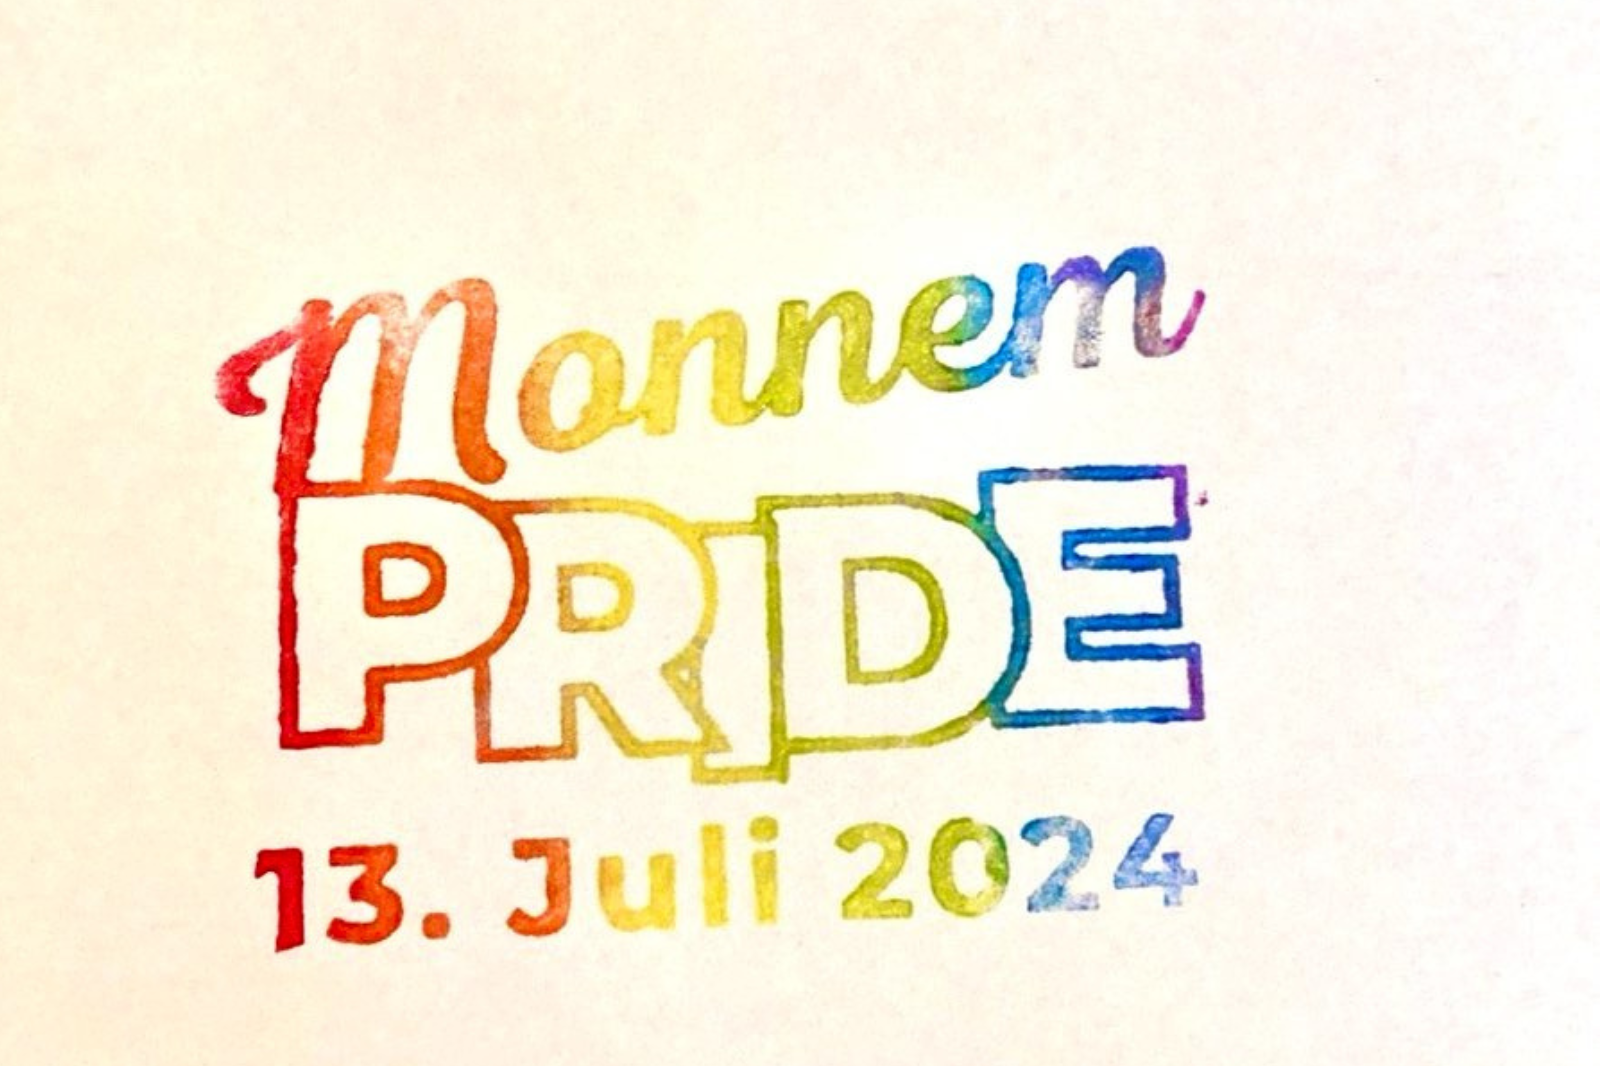 Auf dem Bild ist ein regenbogen-farbener Stempel zu sehen, auf dem "Monnem PRIDE 13. Juli 2024" steht. Der Hintergrund ist creme-farben.